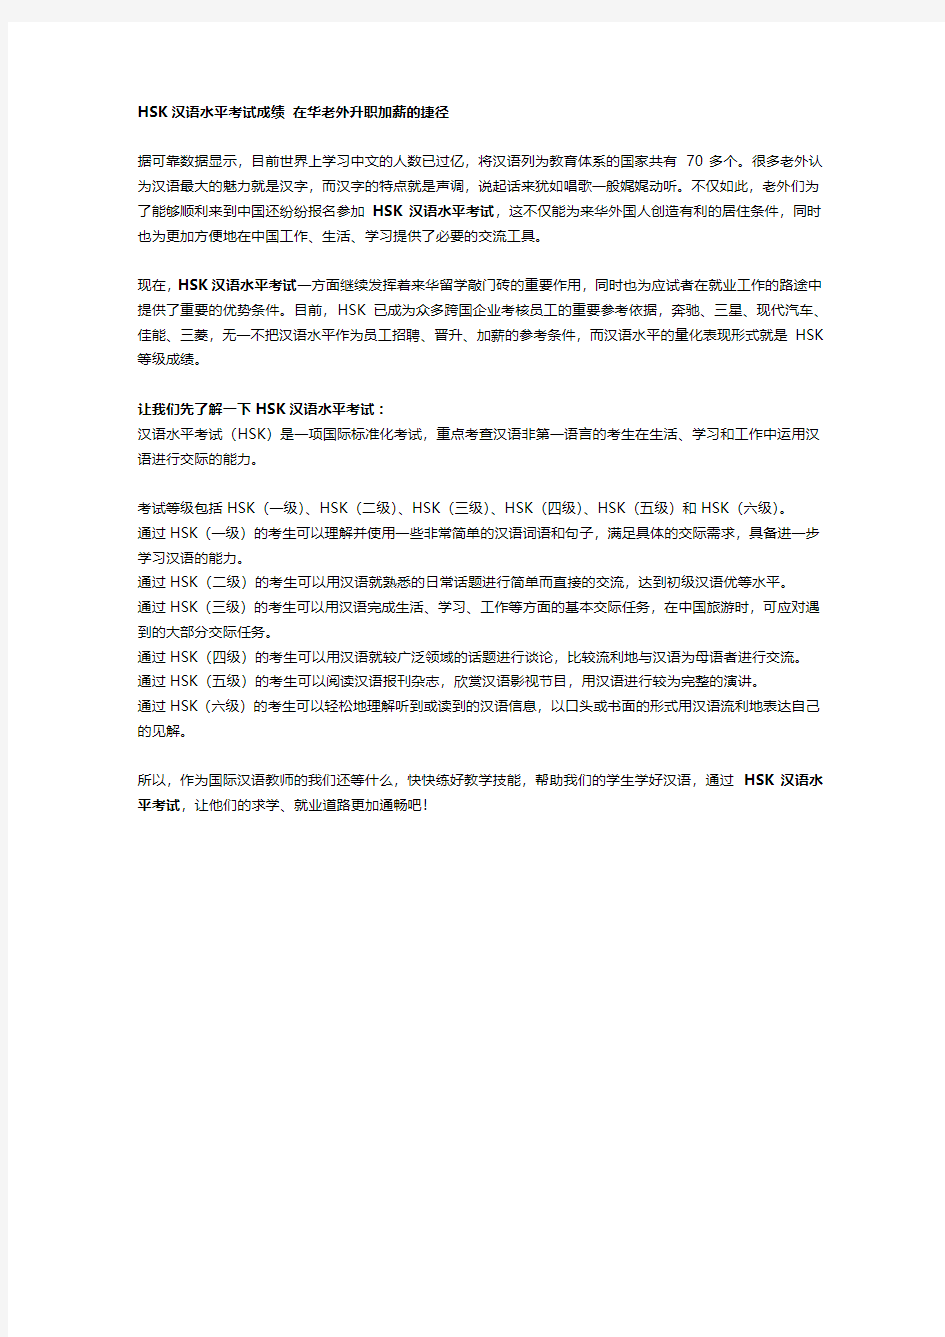 HSK汉语水平考试成绩 在华老外升职加薪的捷径